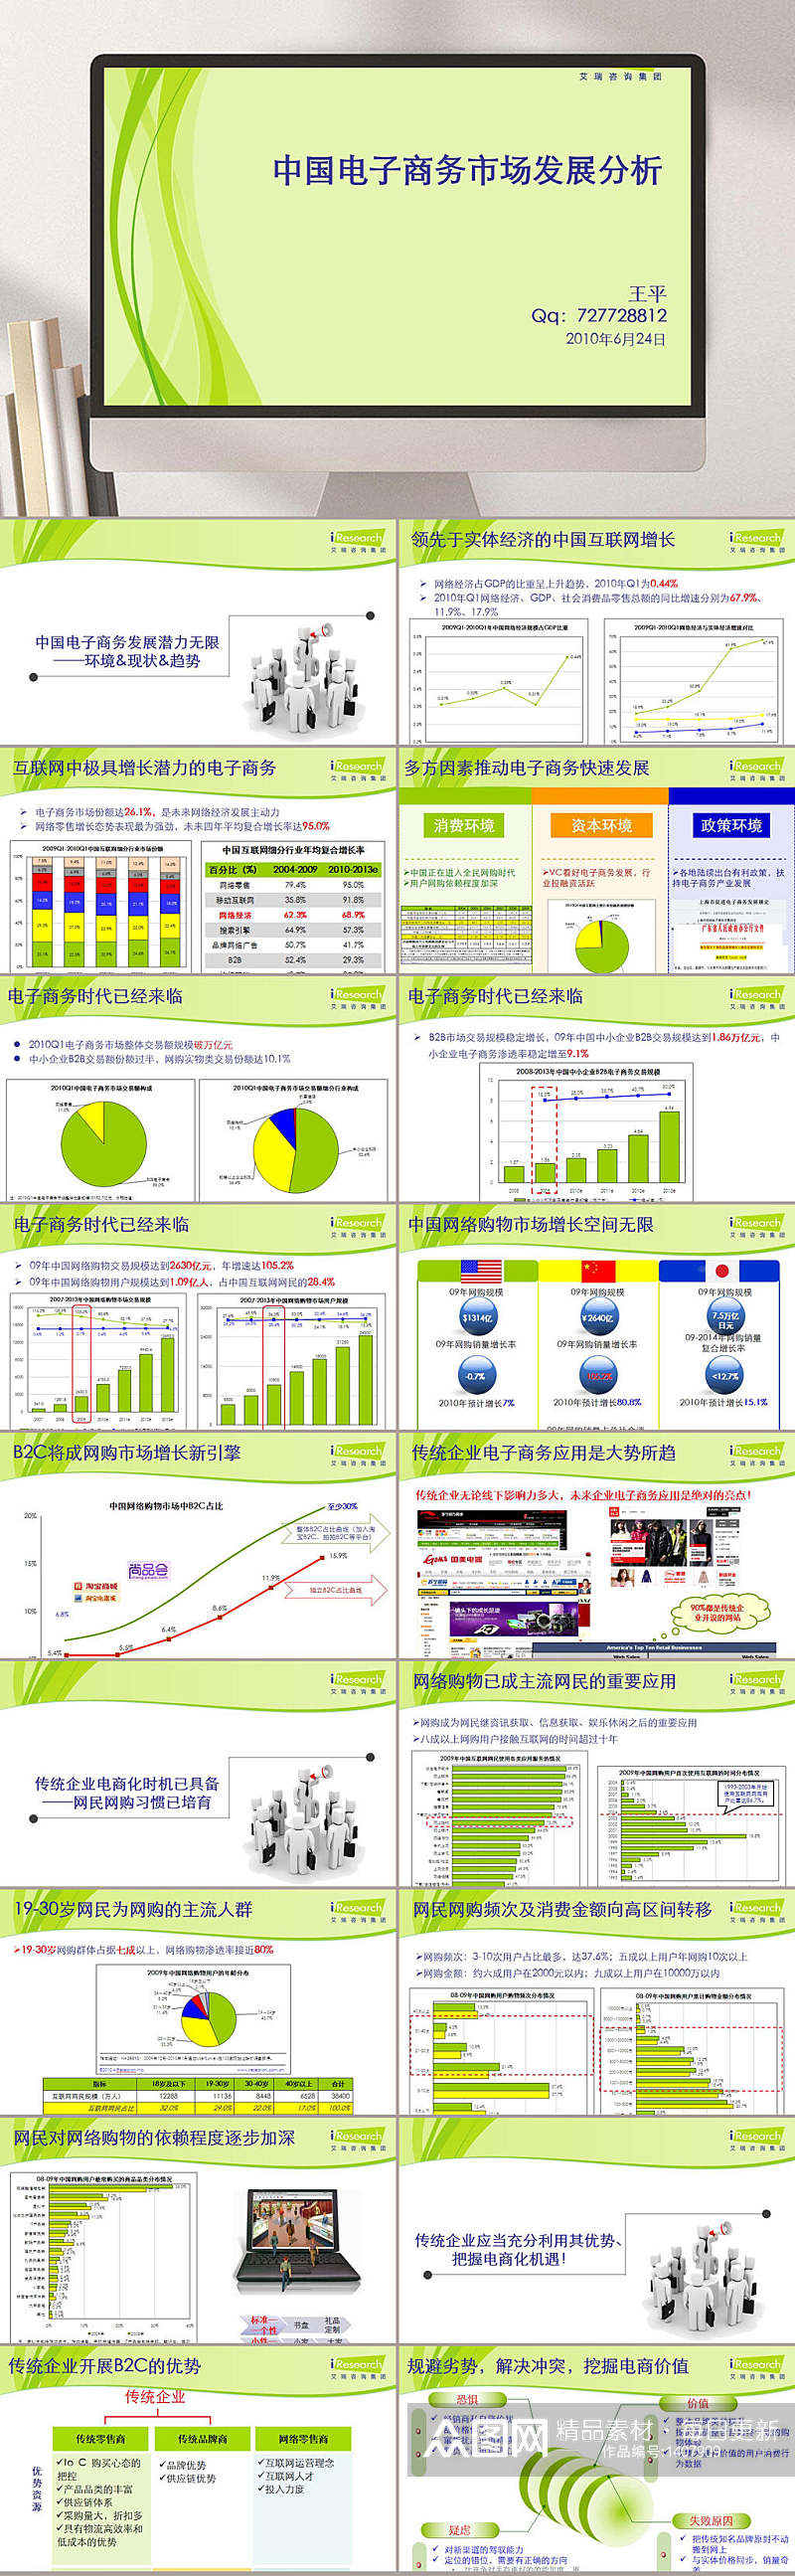 中国电子商务市场发展分析PPT模板素材